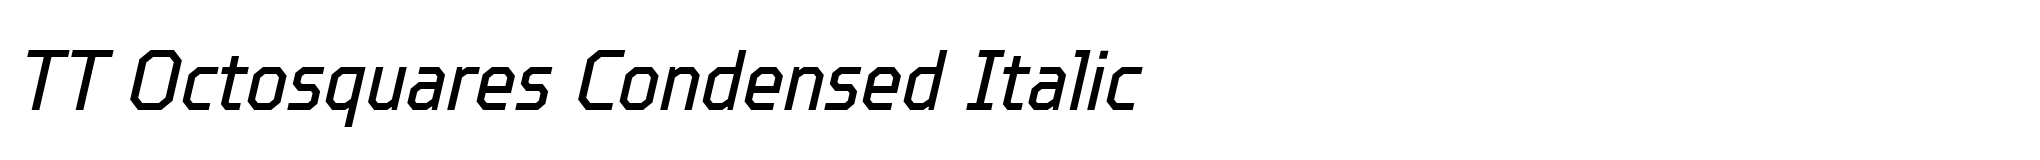 TT Octosquares Condensed Italic image